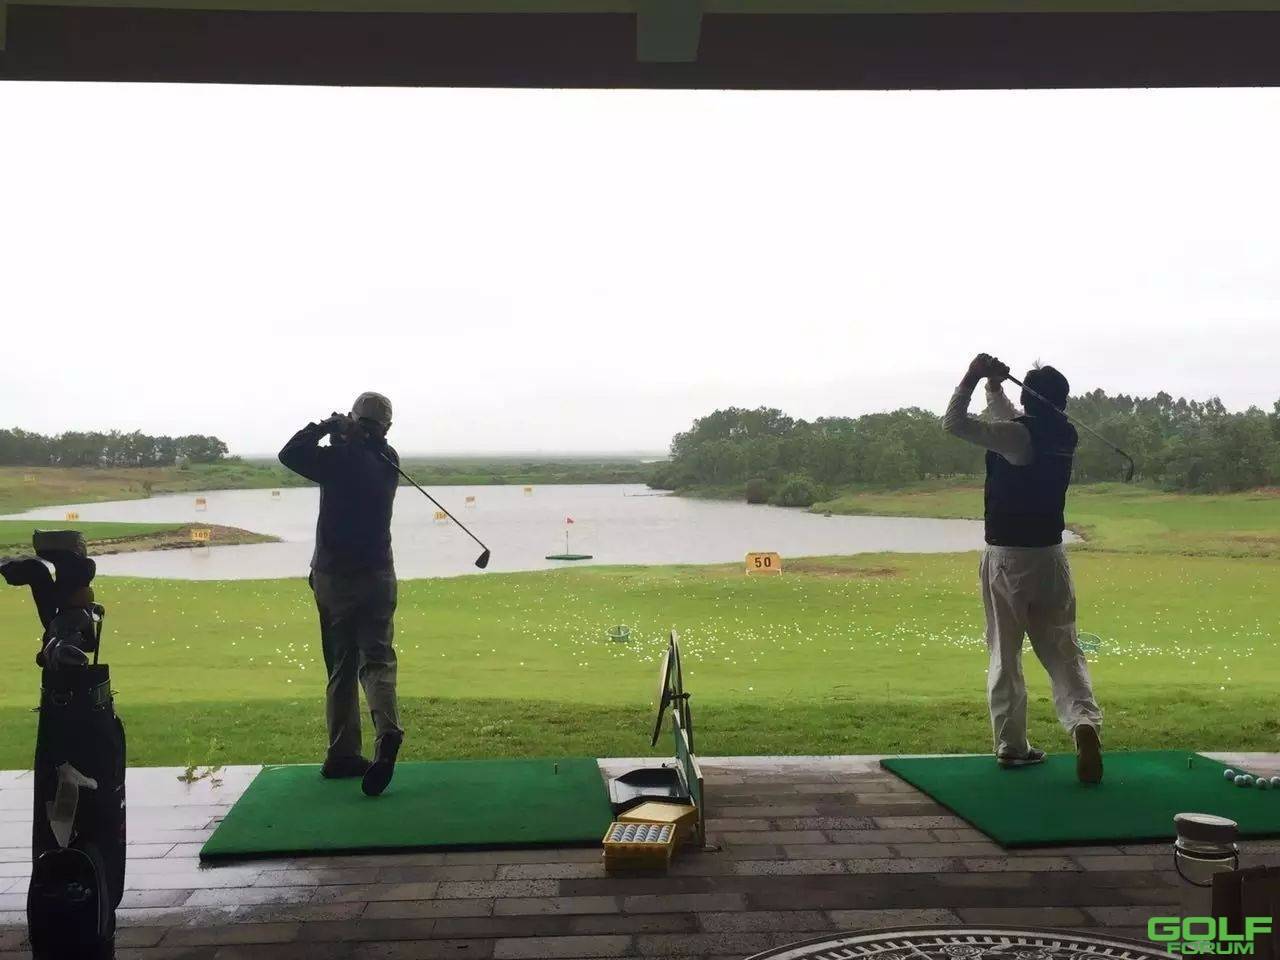 2016年古盐田高尔夫俱乐部会员邀请赛圆满落幕